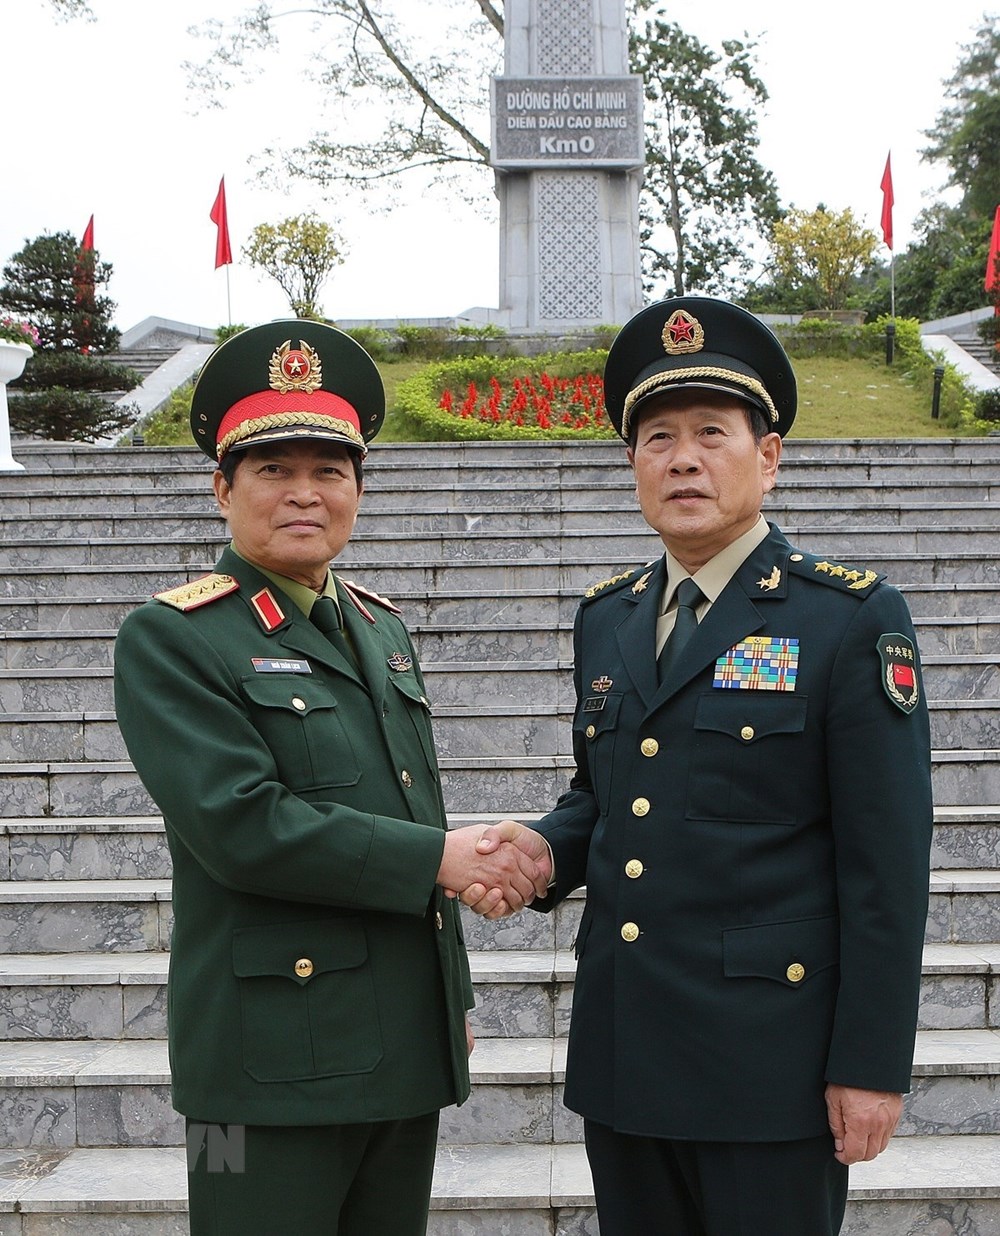 Đây là hoạt động nằm trong chương trình Giao lưu Hữu nghị quốc phòng biên giới Việt Nam-Trung Quốc lần thứ 5. (Ảnh: Dương Giang/TTXVN)